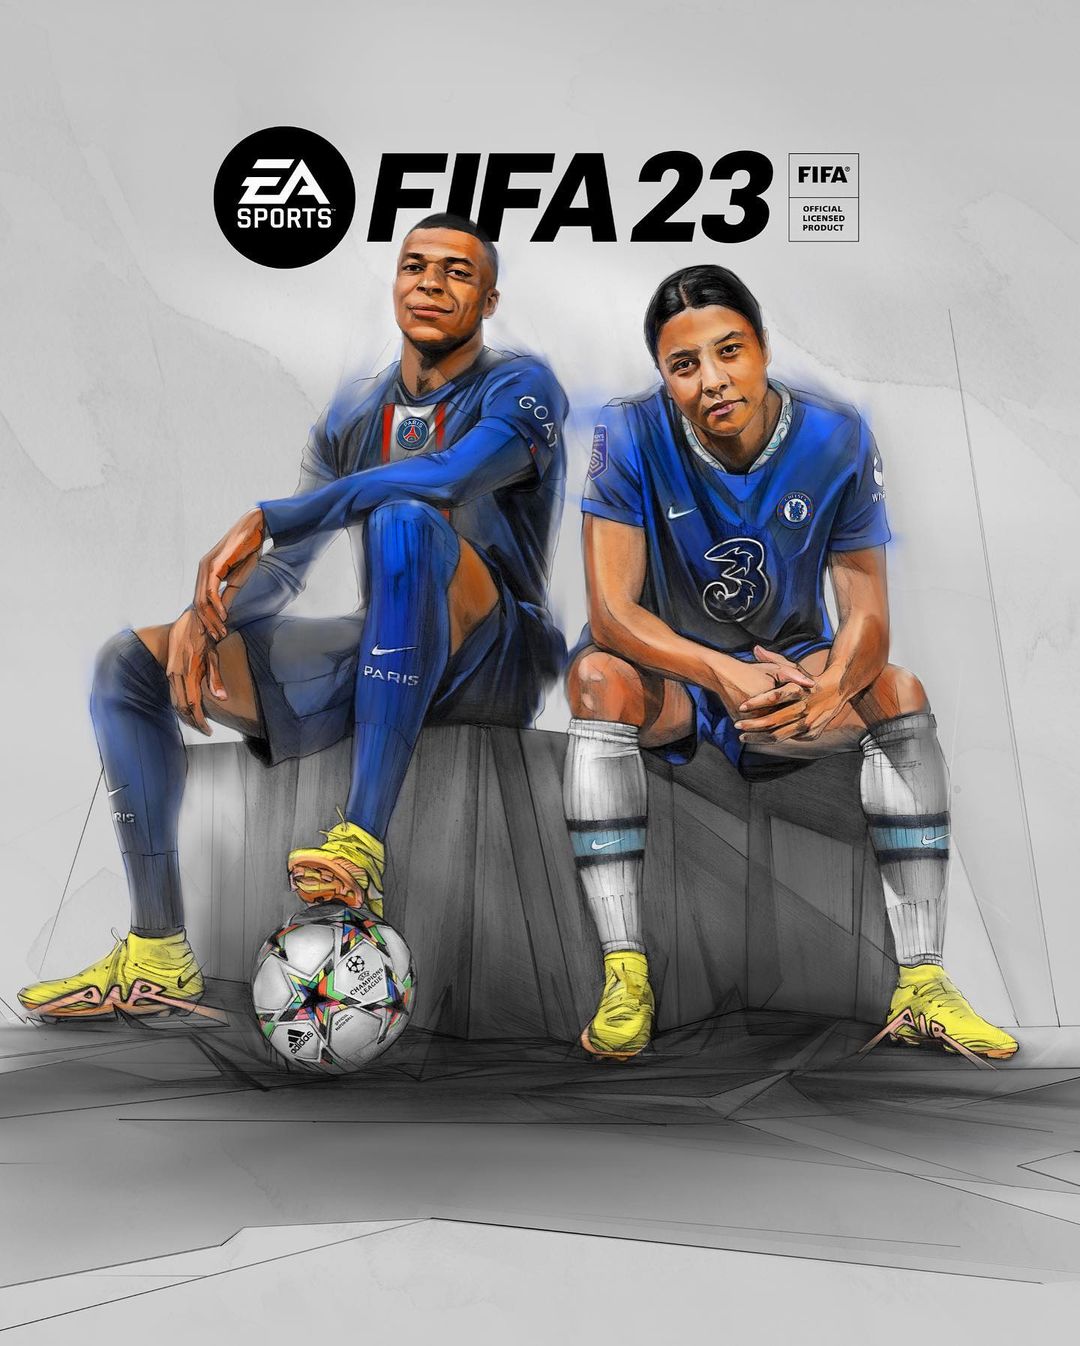 Affiche pour le jeu vidéo FIFA 23